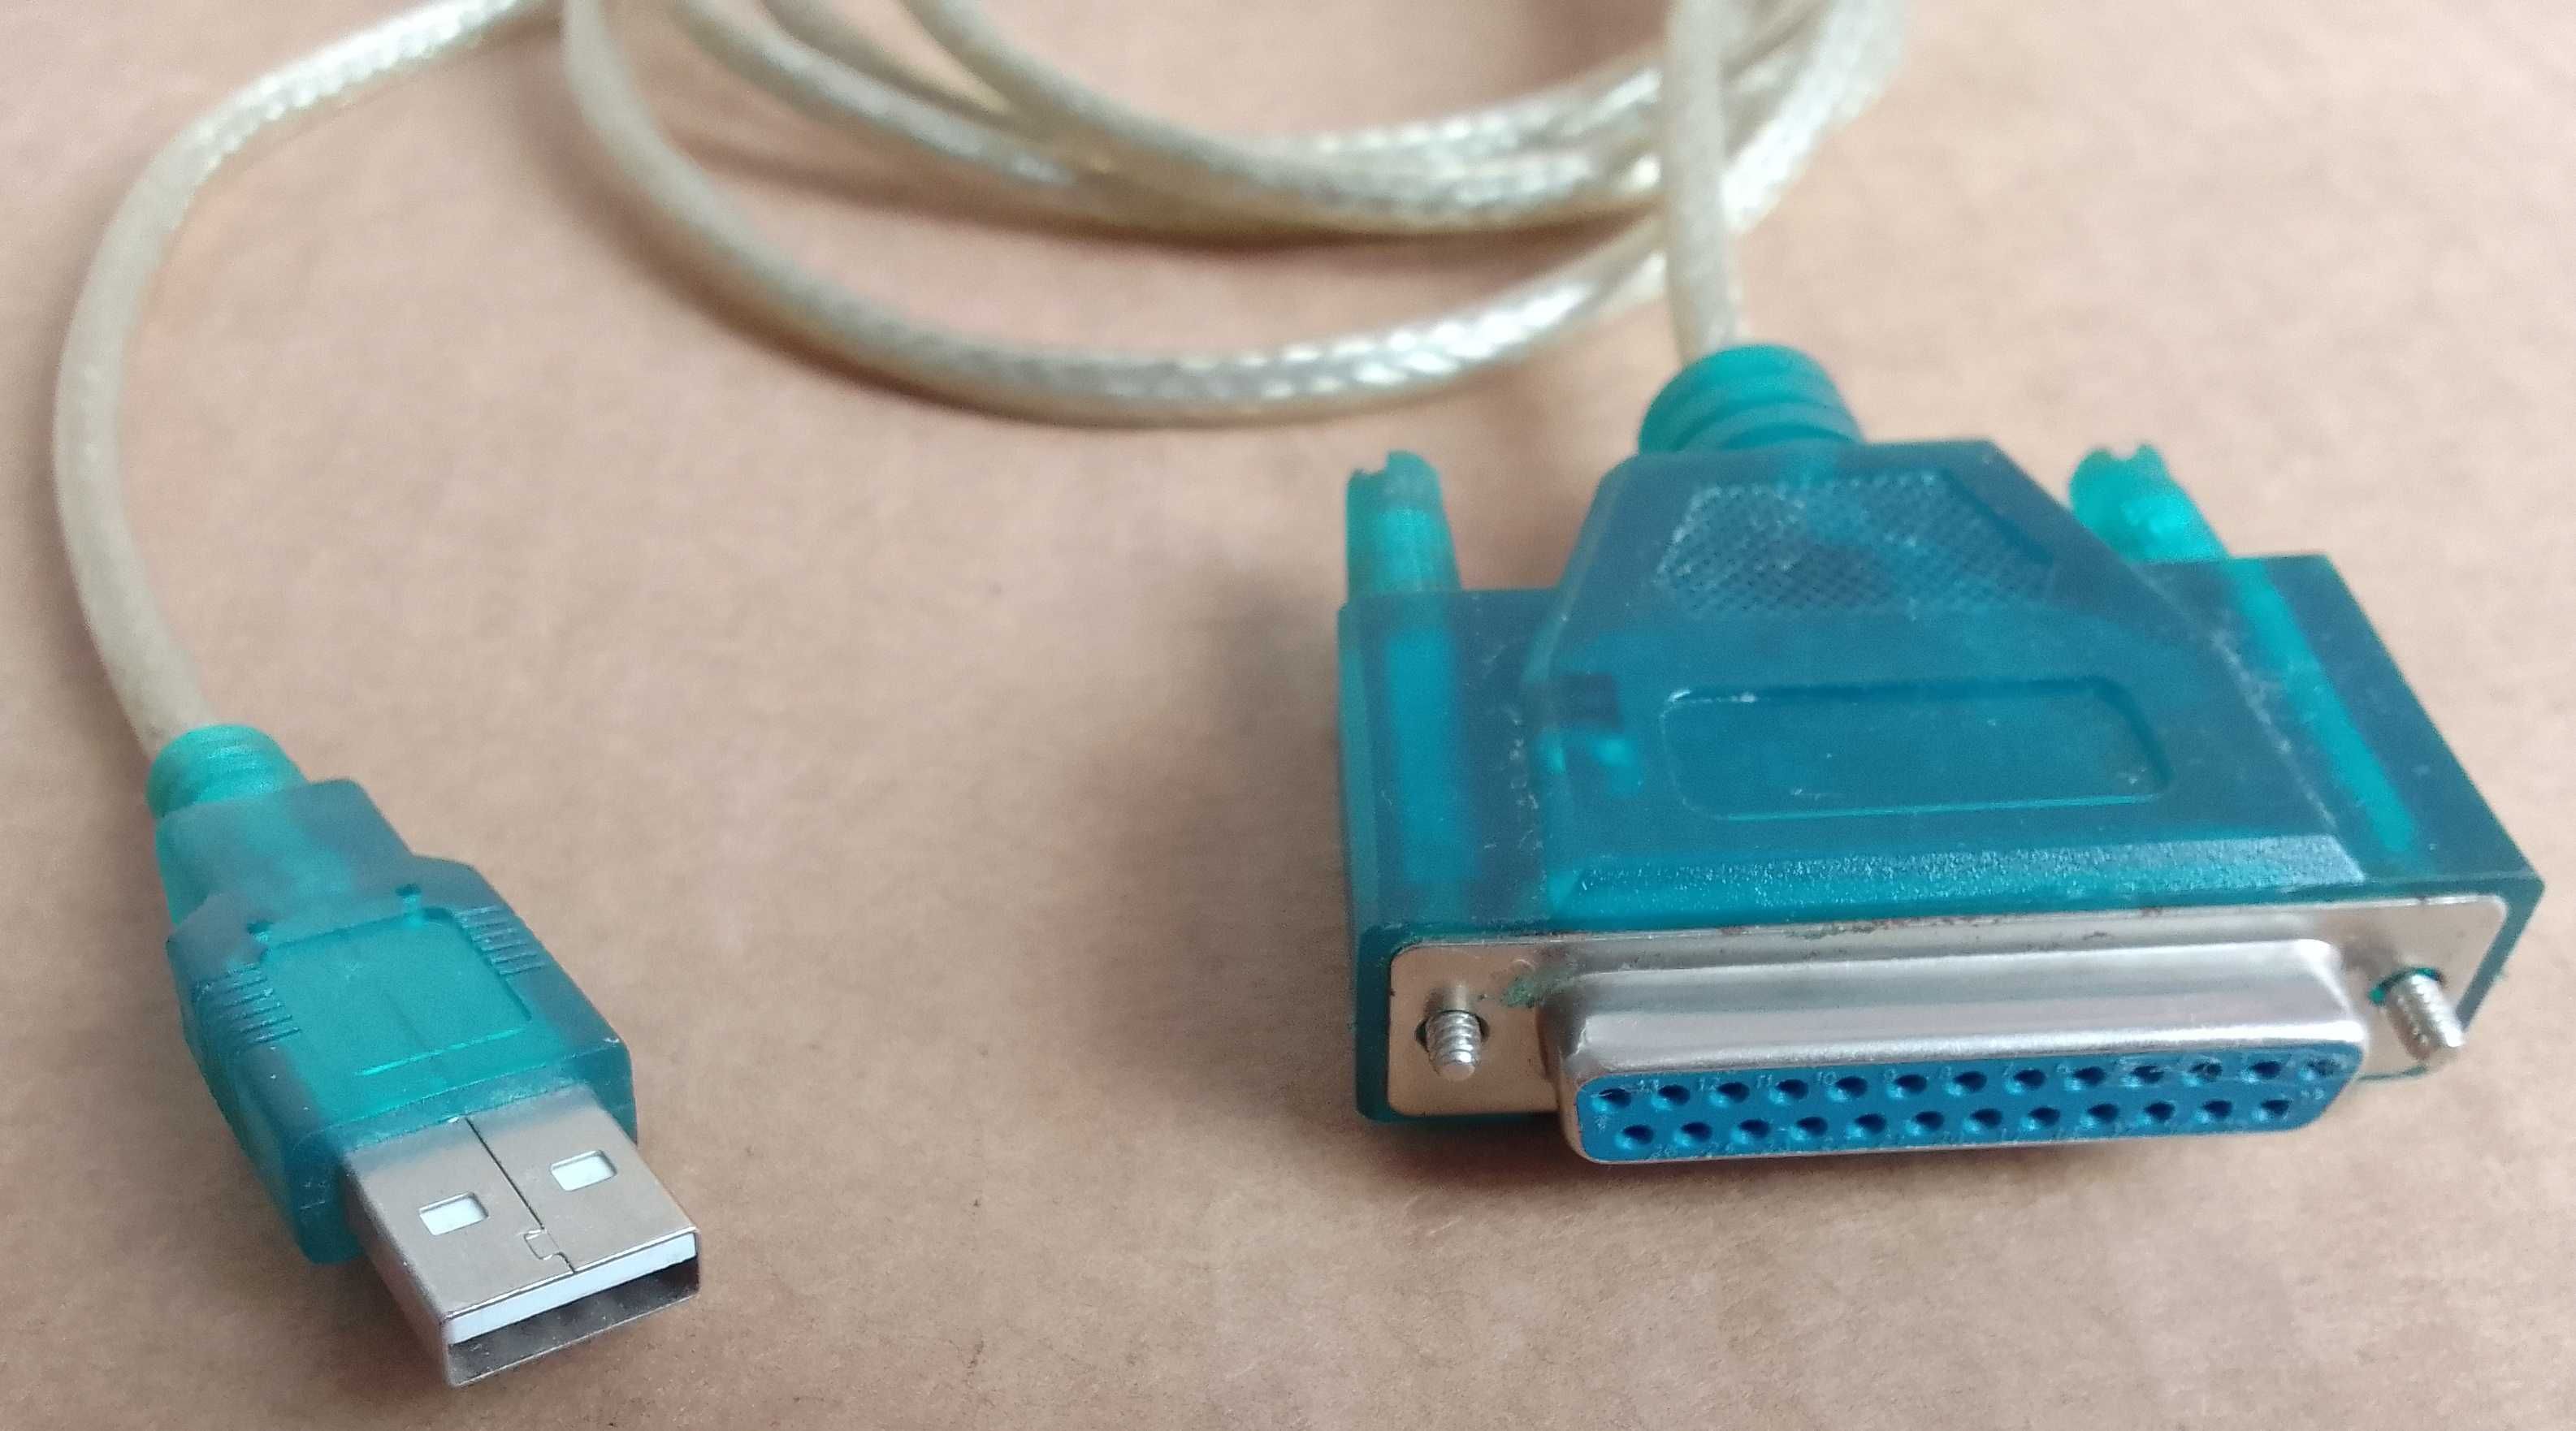 Провод Шнур для принтера LPT - USB - провод шнур кабель из Германии